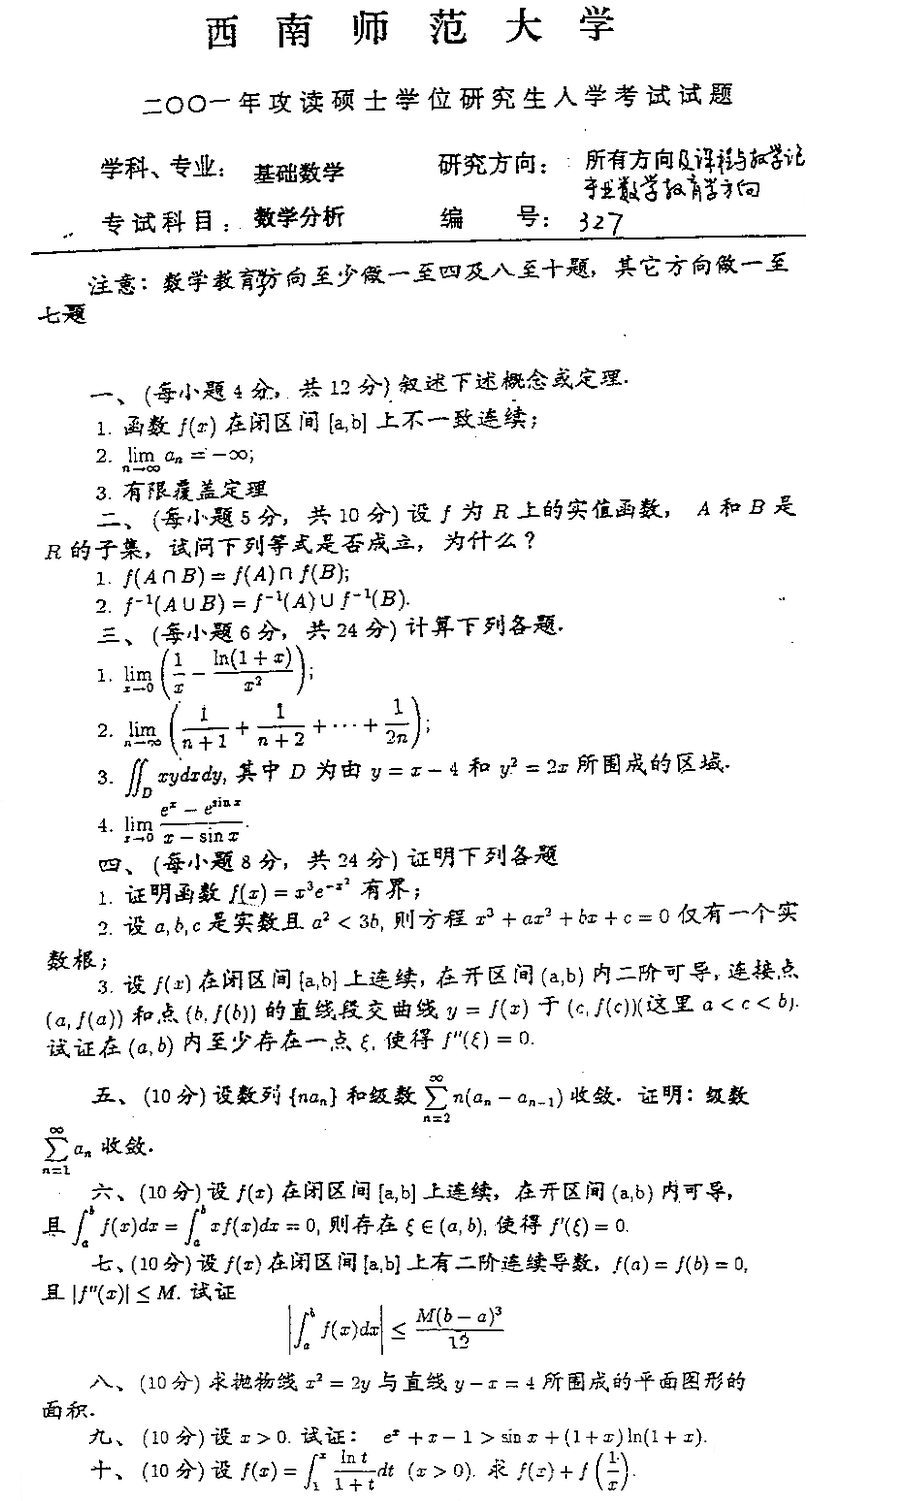 2001西南师范大学考研数学真题（数学分析）.png